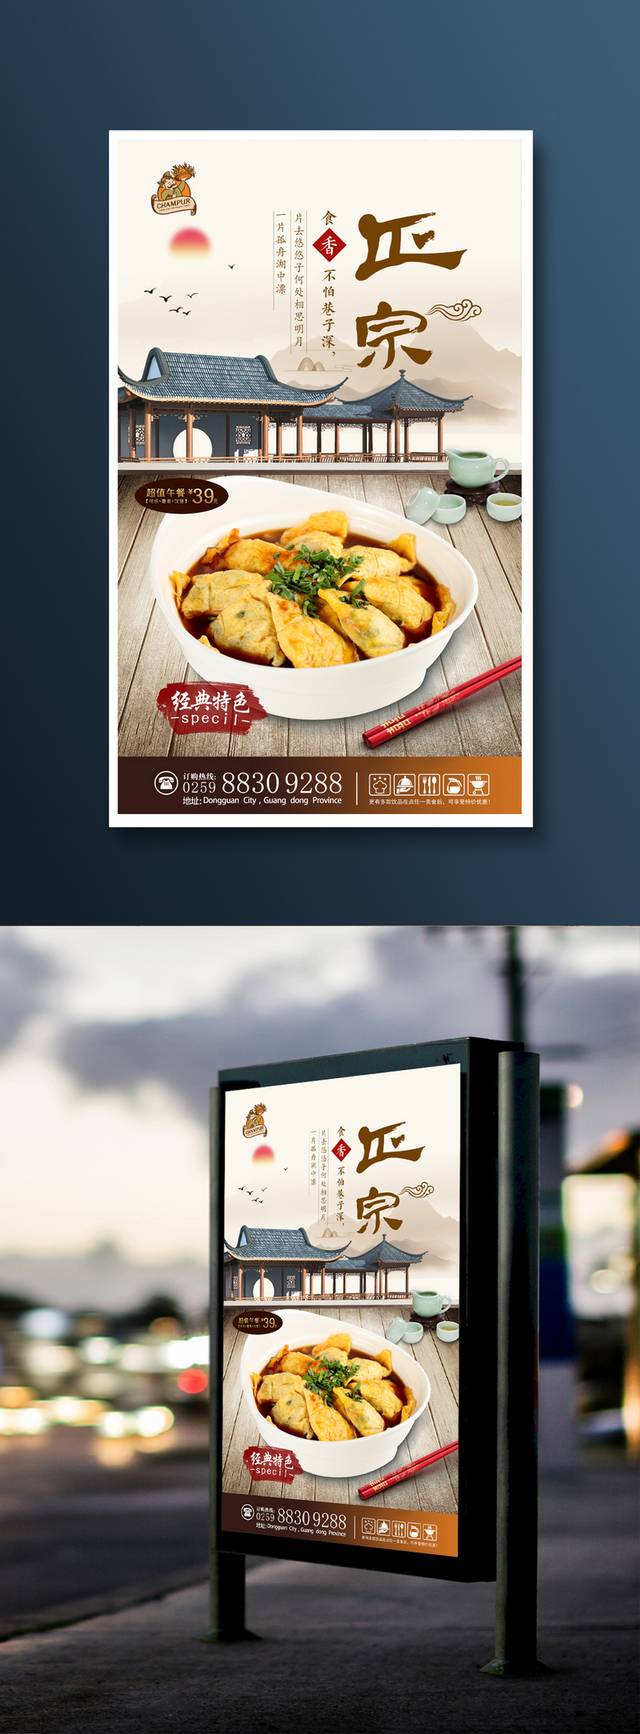 中国风传统美食海报设计